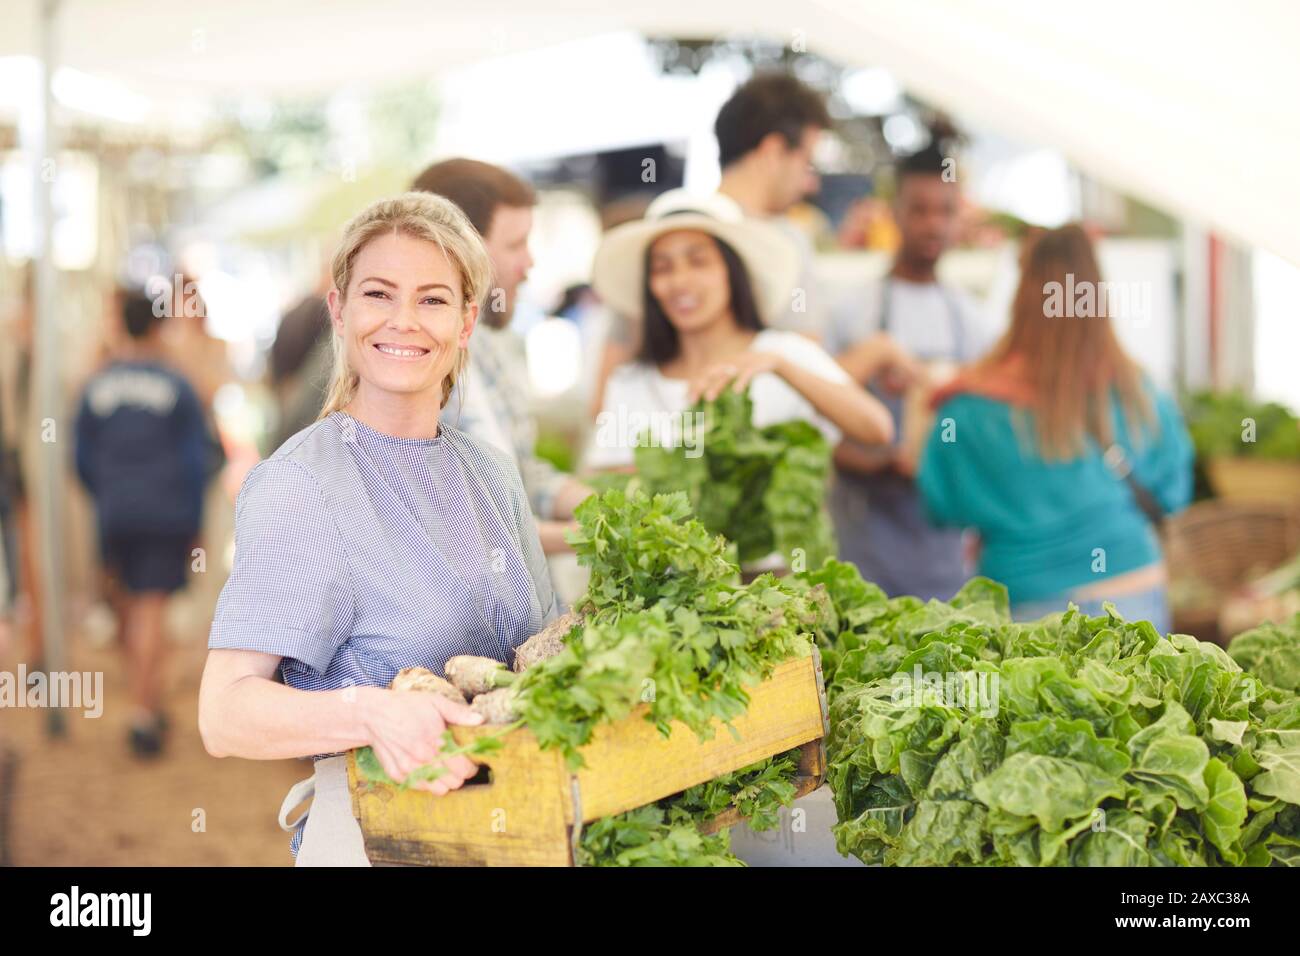 Portrait lächelnde, selbstbewusste Frau, die auf dem Bauernmarkt Kiste mit Gemüse trägt Stockfoto